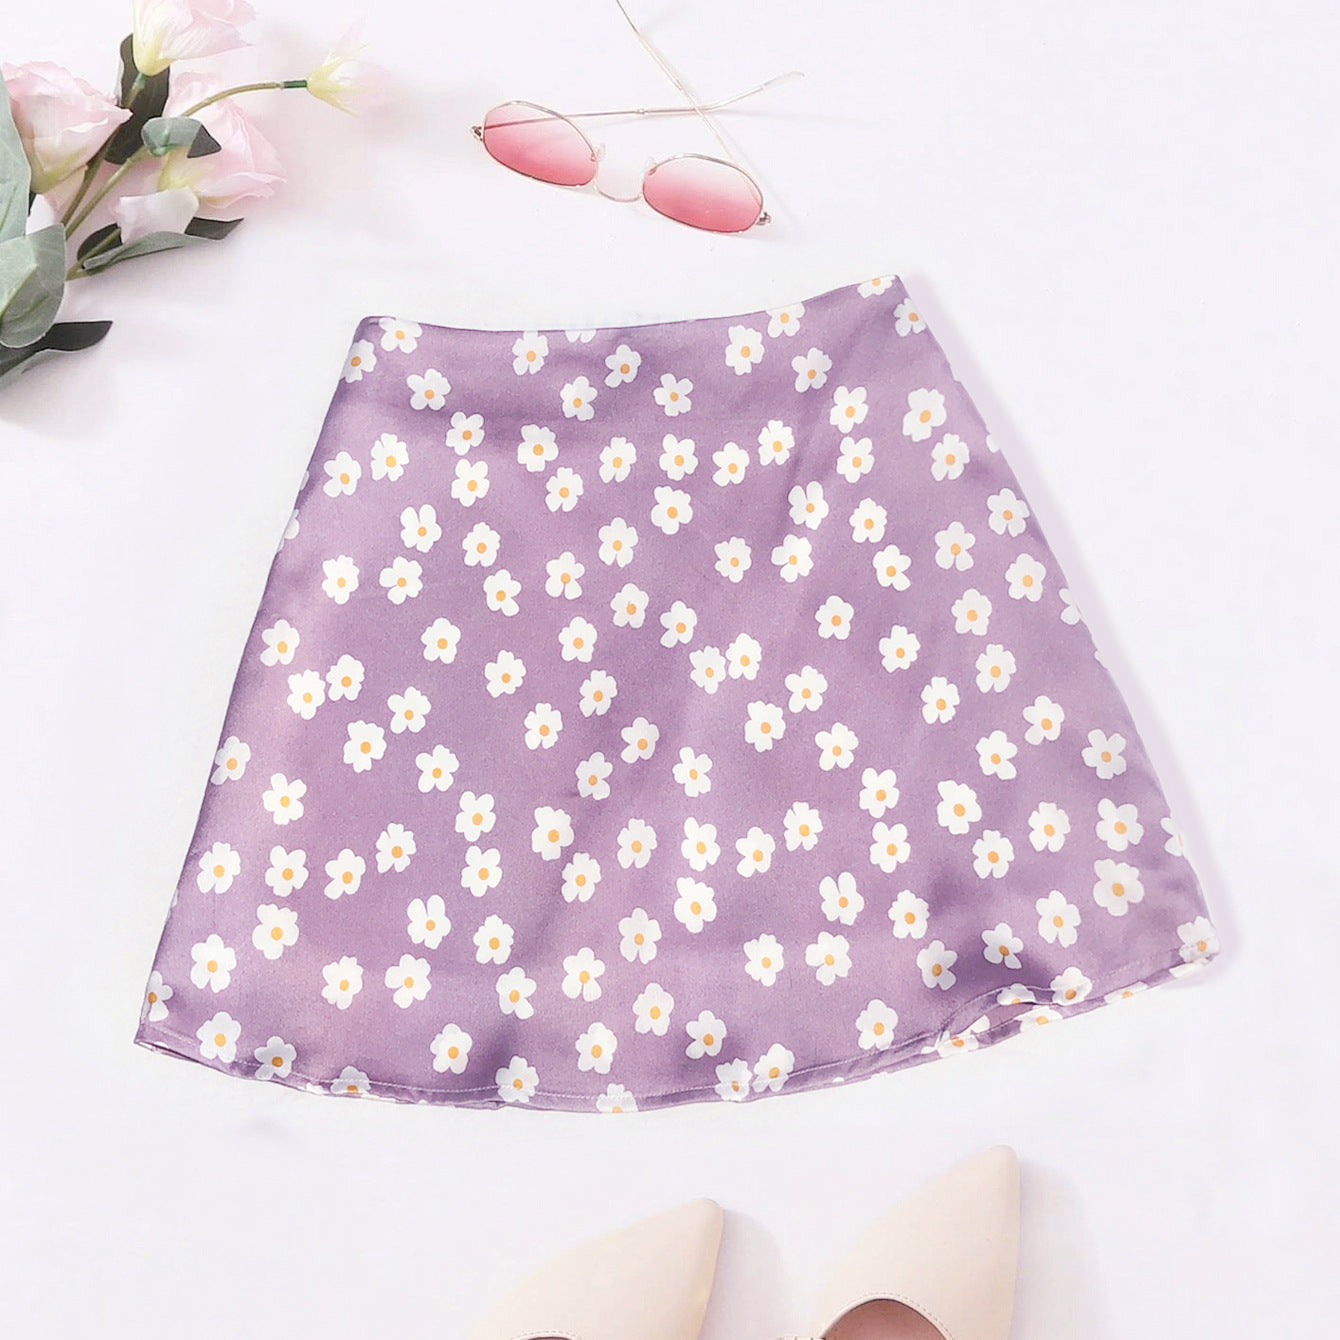 Women's Printing High Waist Satin Printed Short Pink Small Flower Leopard Skirt